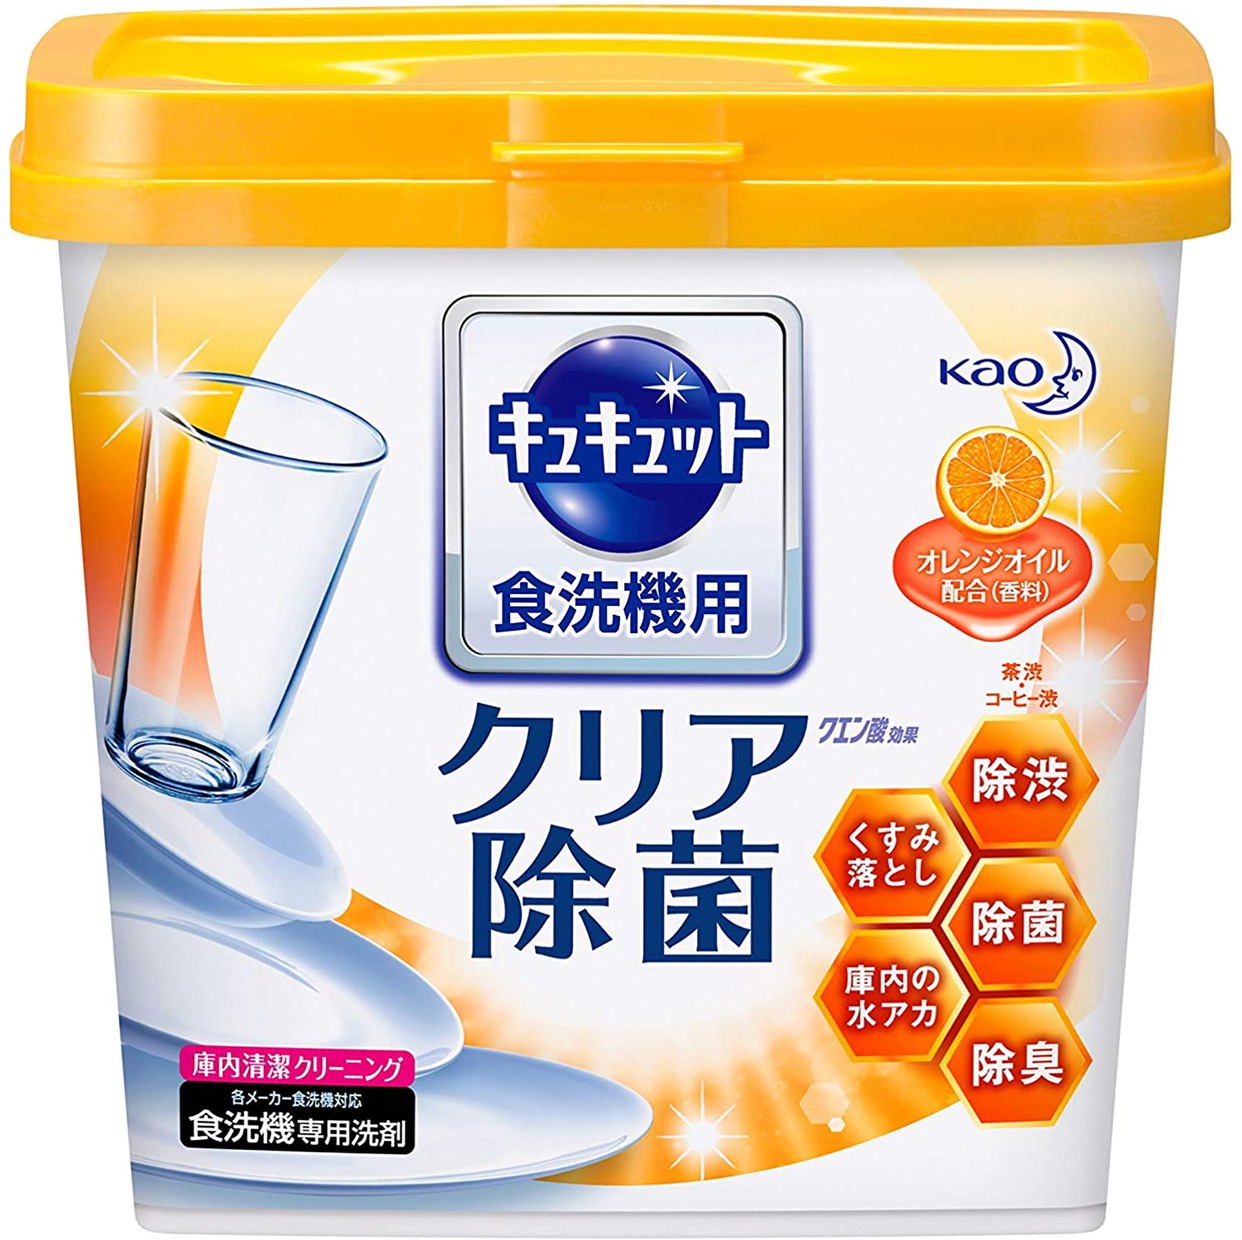 食洗機用洗剤おすすめ商品：花王(kao) 食器洗い乾燥機専用キュキュット クエン酸効果 オレンジオイル配合